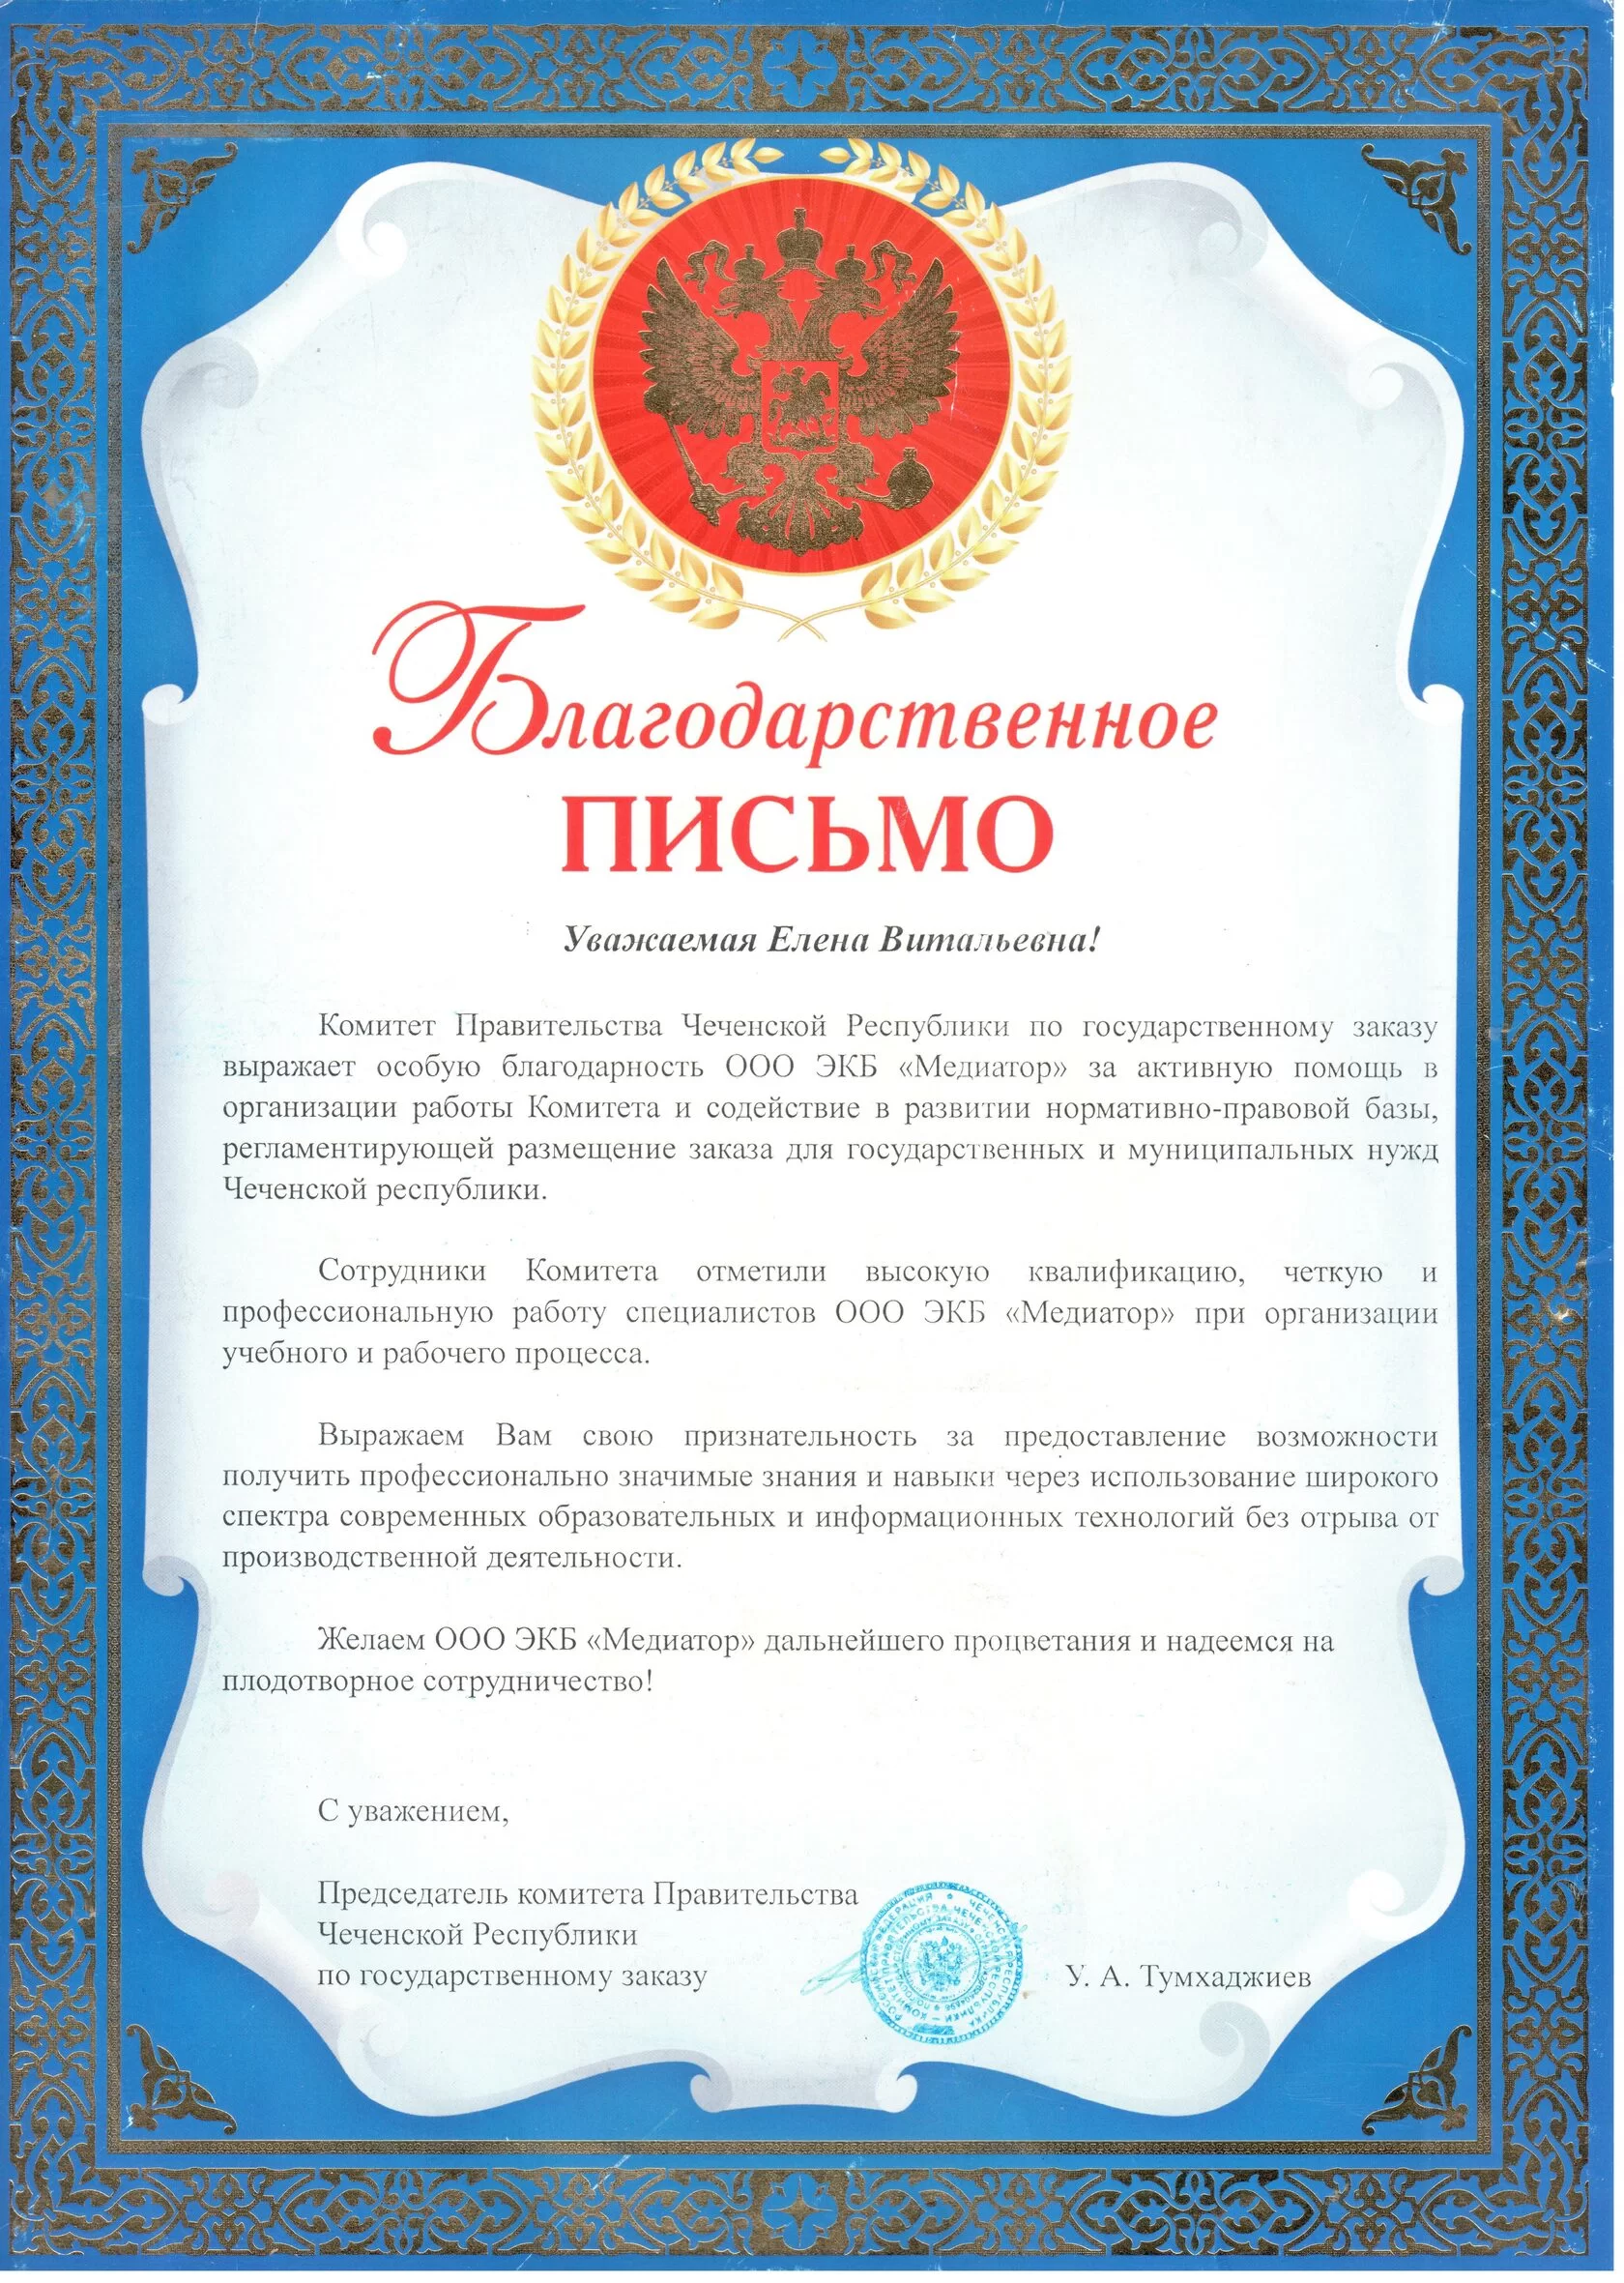 Комитет Правительства Чеченской Республики по государственному заказу